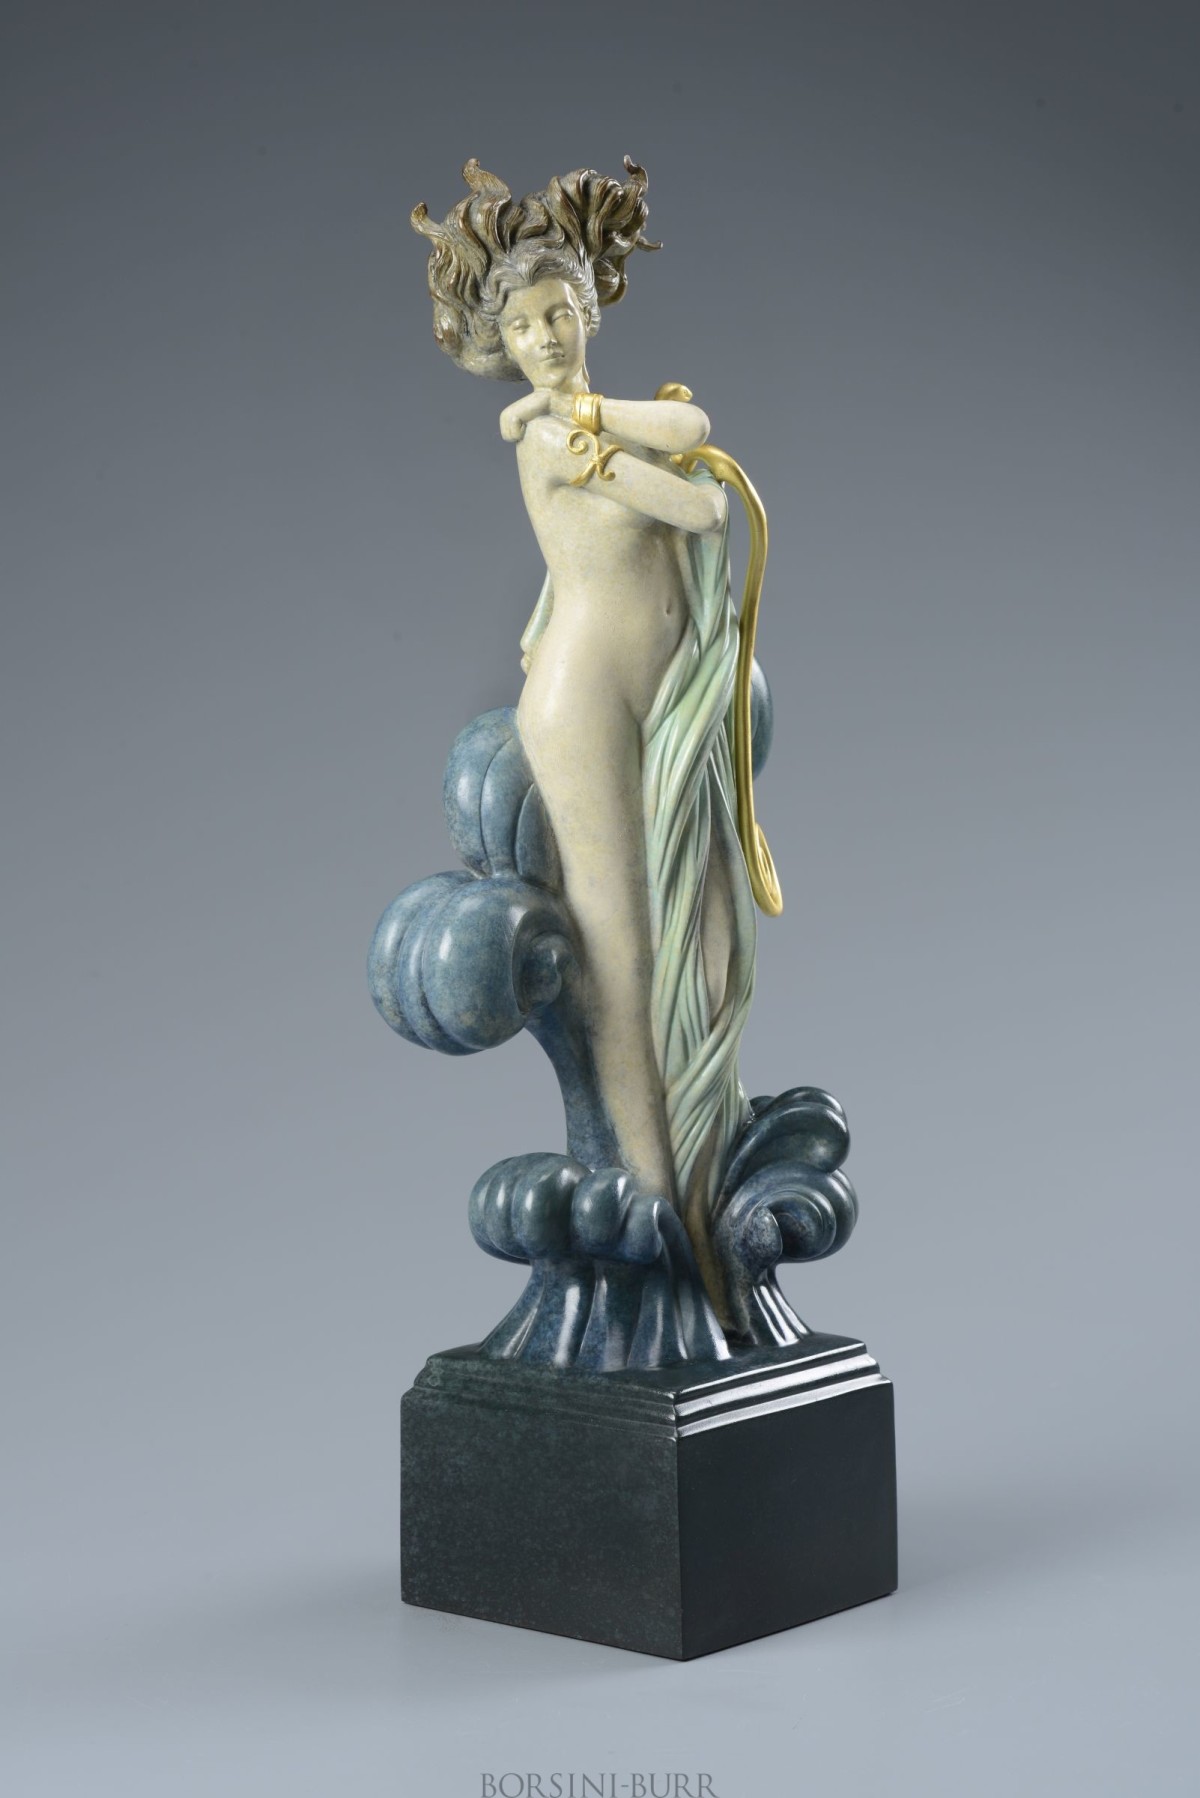 "Venus" Beauty in Bronze Sculpture by Michael Parkes